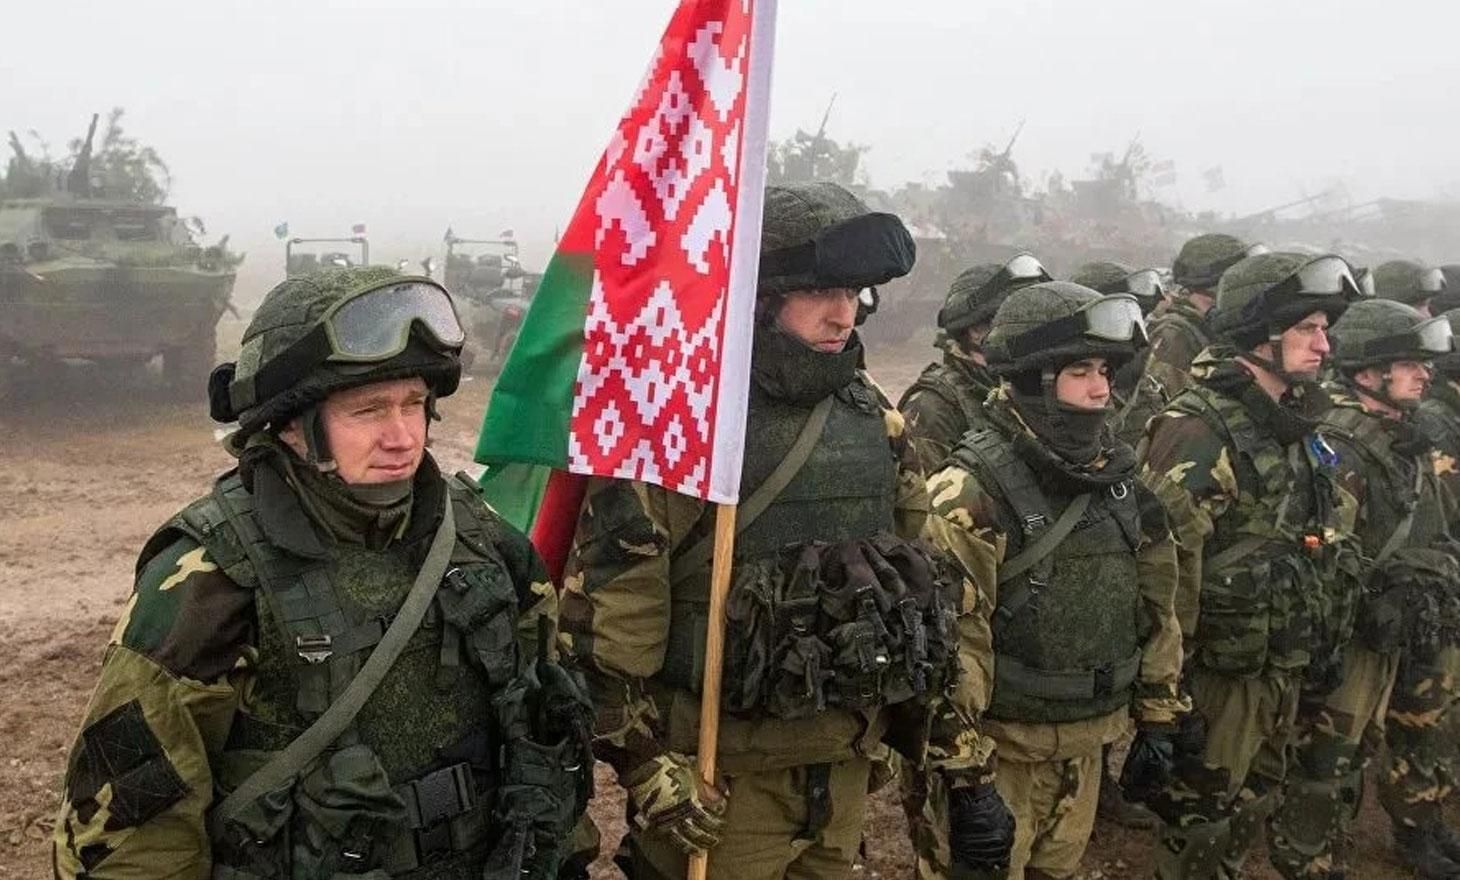 Из-за текущей ситуации оккупанты усилили охрану границы белорусской армией